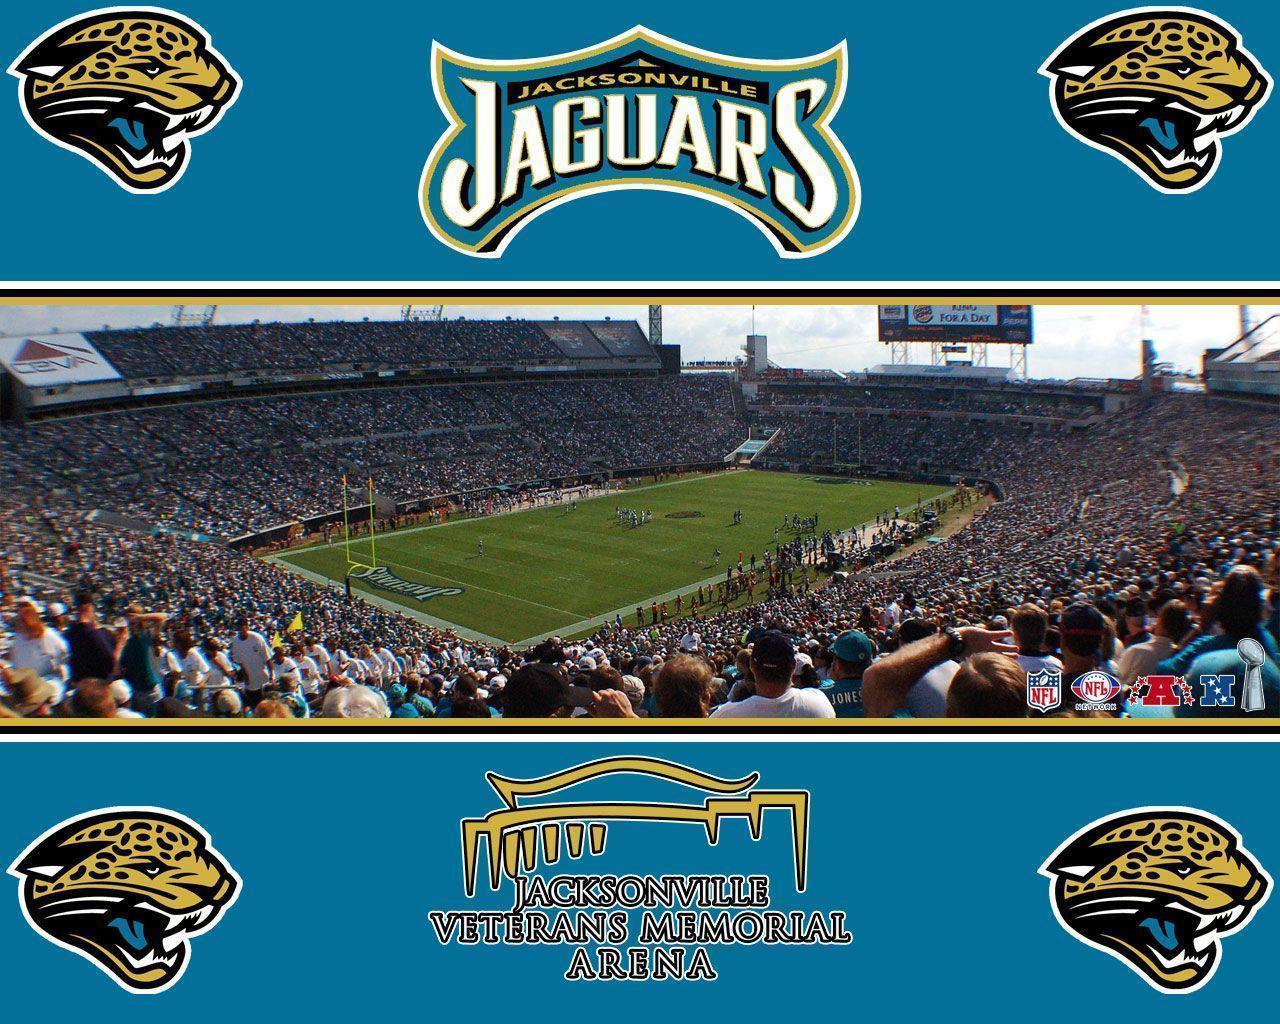 Best image about Jacksonville Jaguars. Patriots